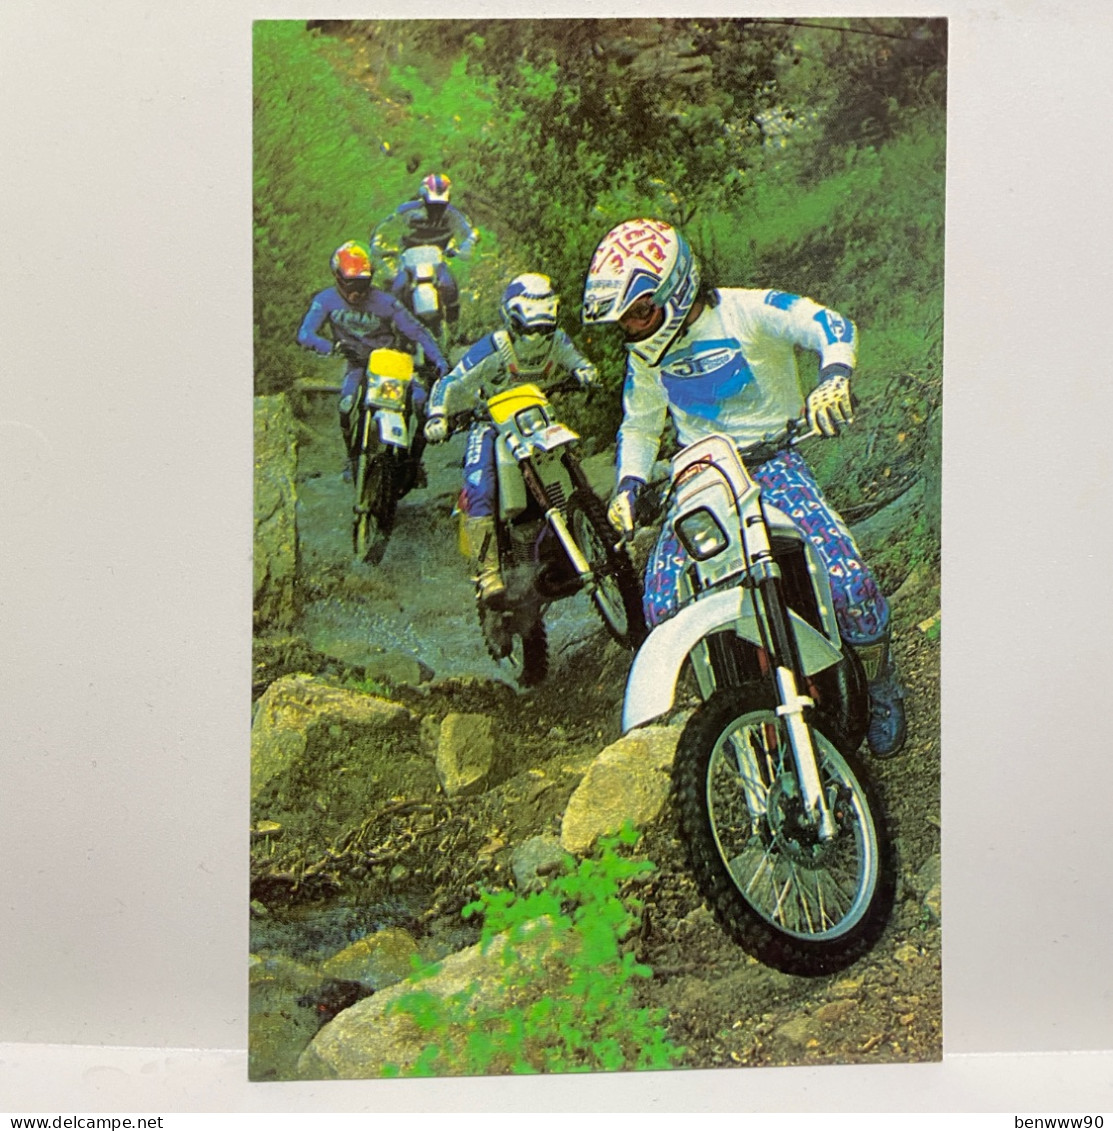 Motorcycle Racing, Moto Racing, Motorbike Racing, Sport Postcard - Motorcycle Sport